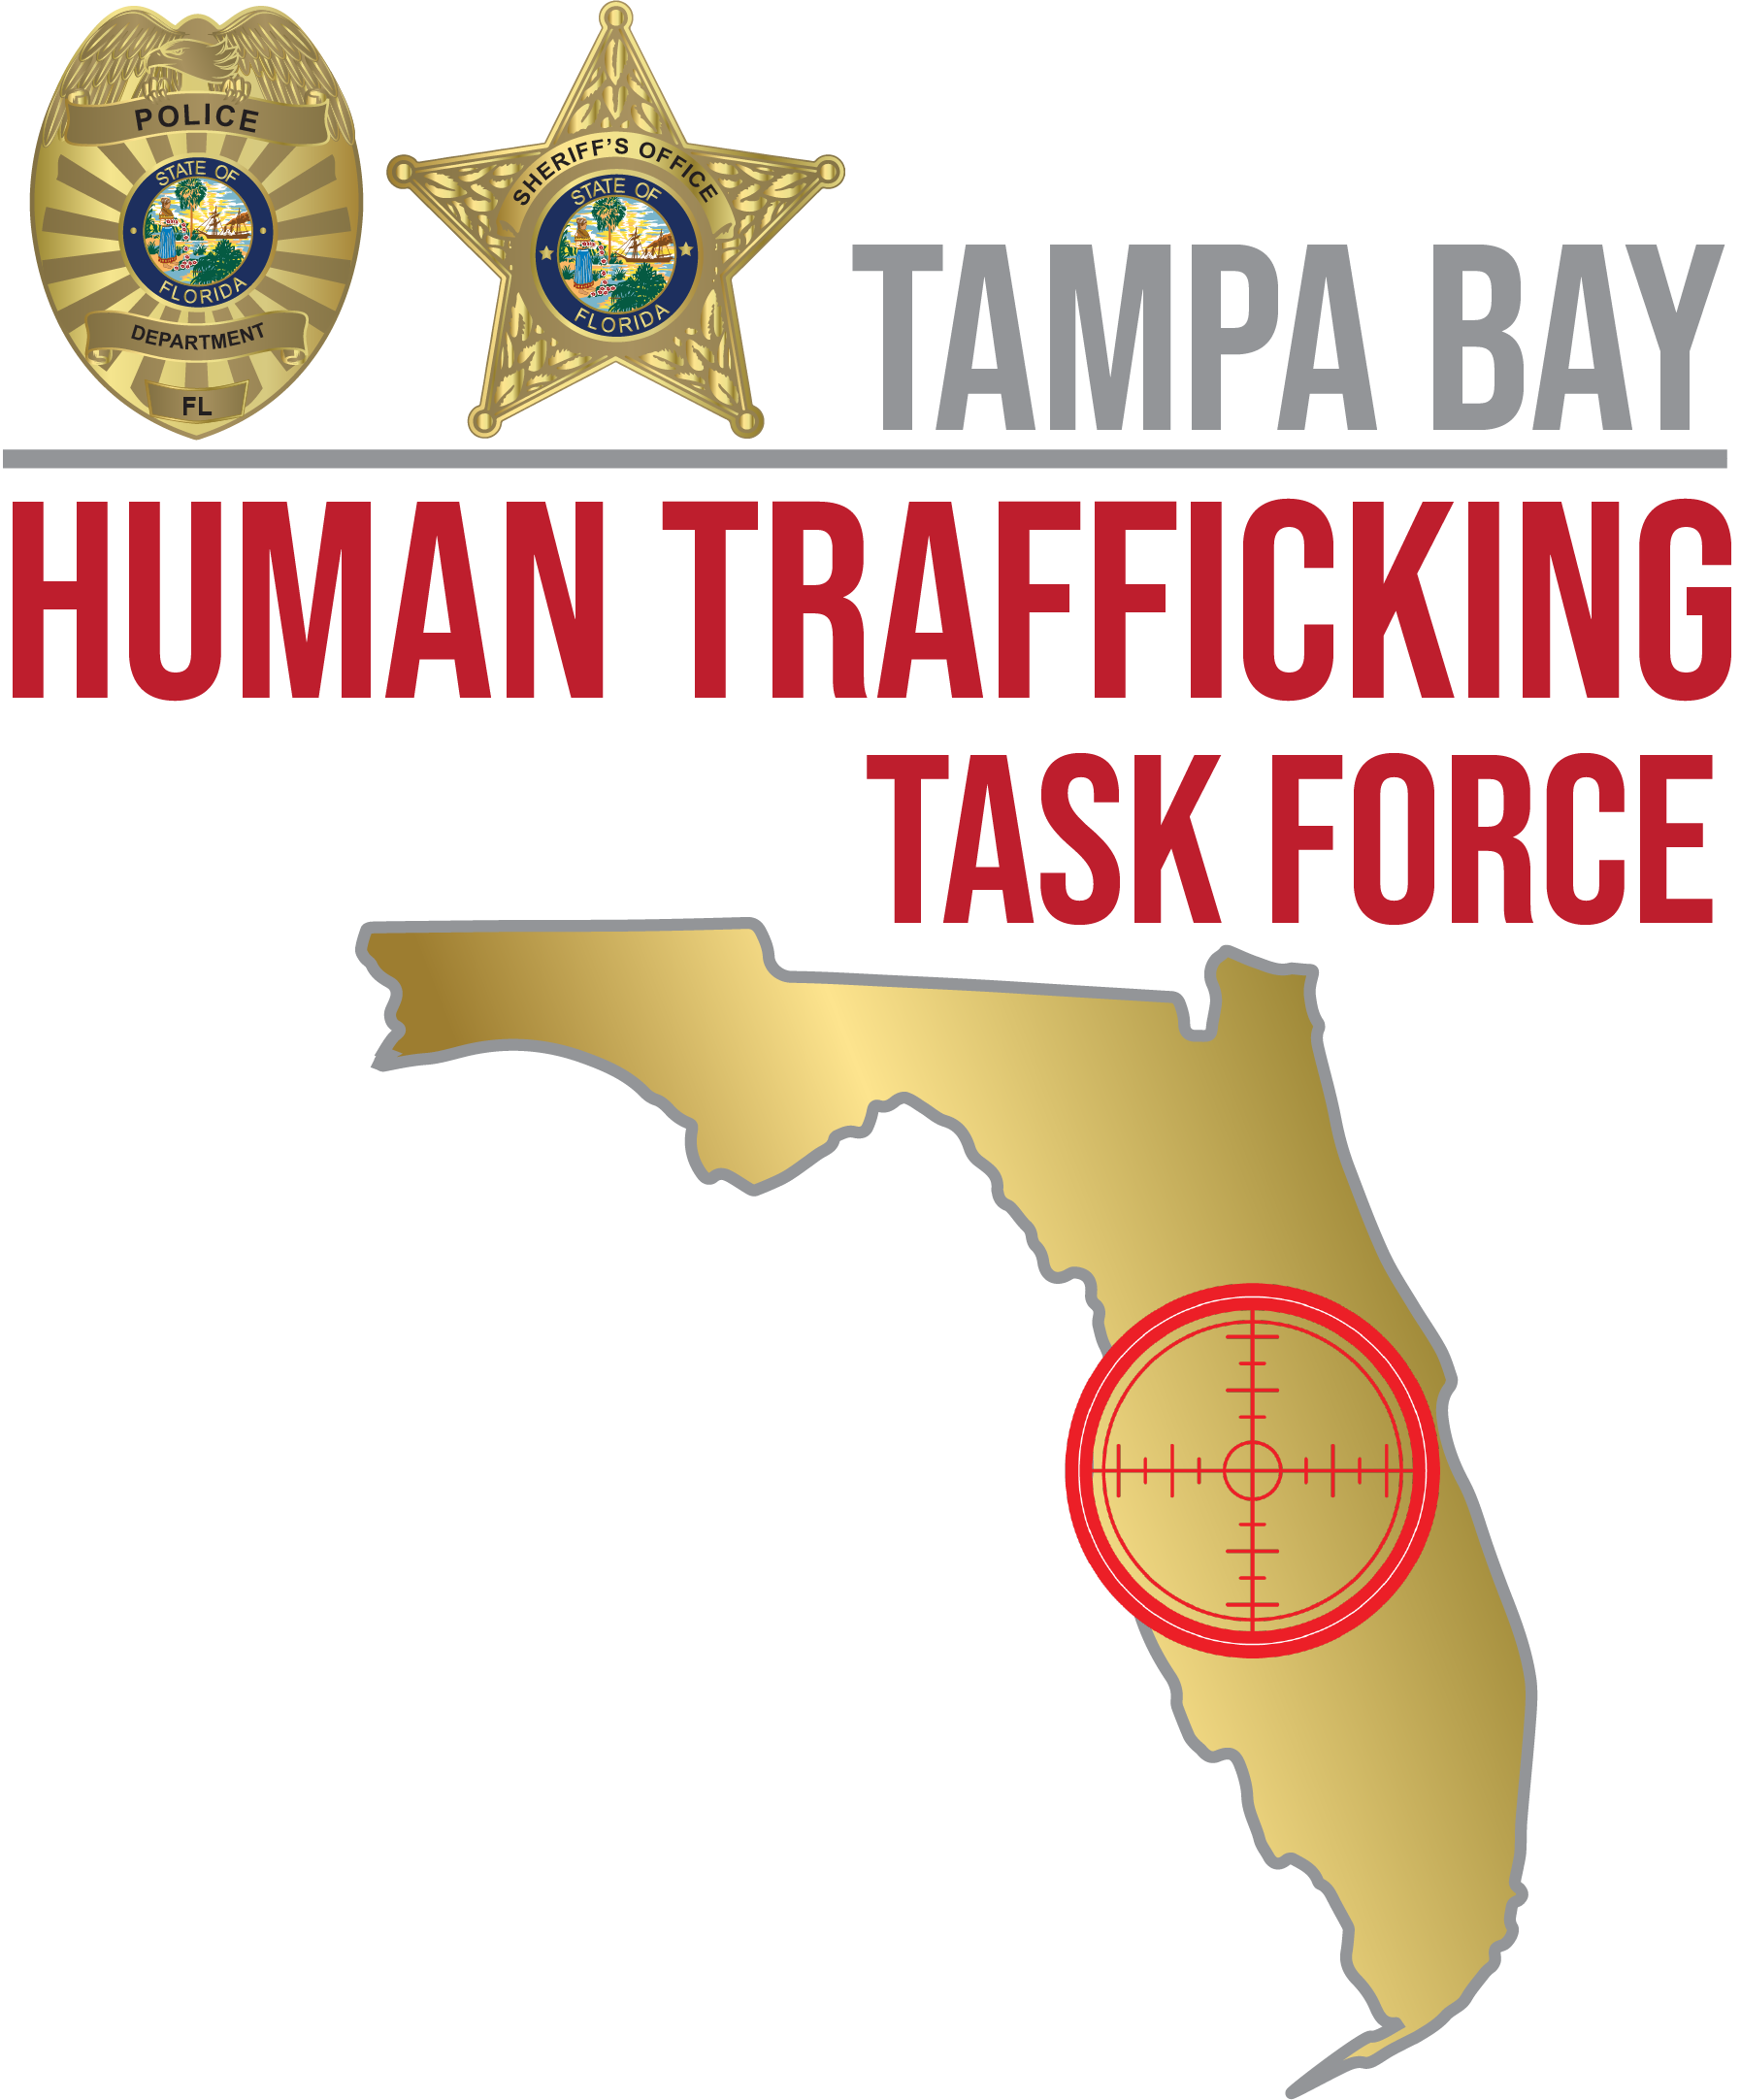 Tampa Bay Human Trafficking Task Force logo